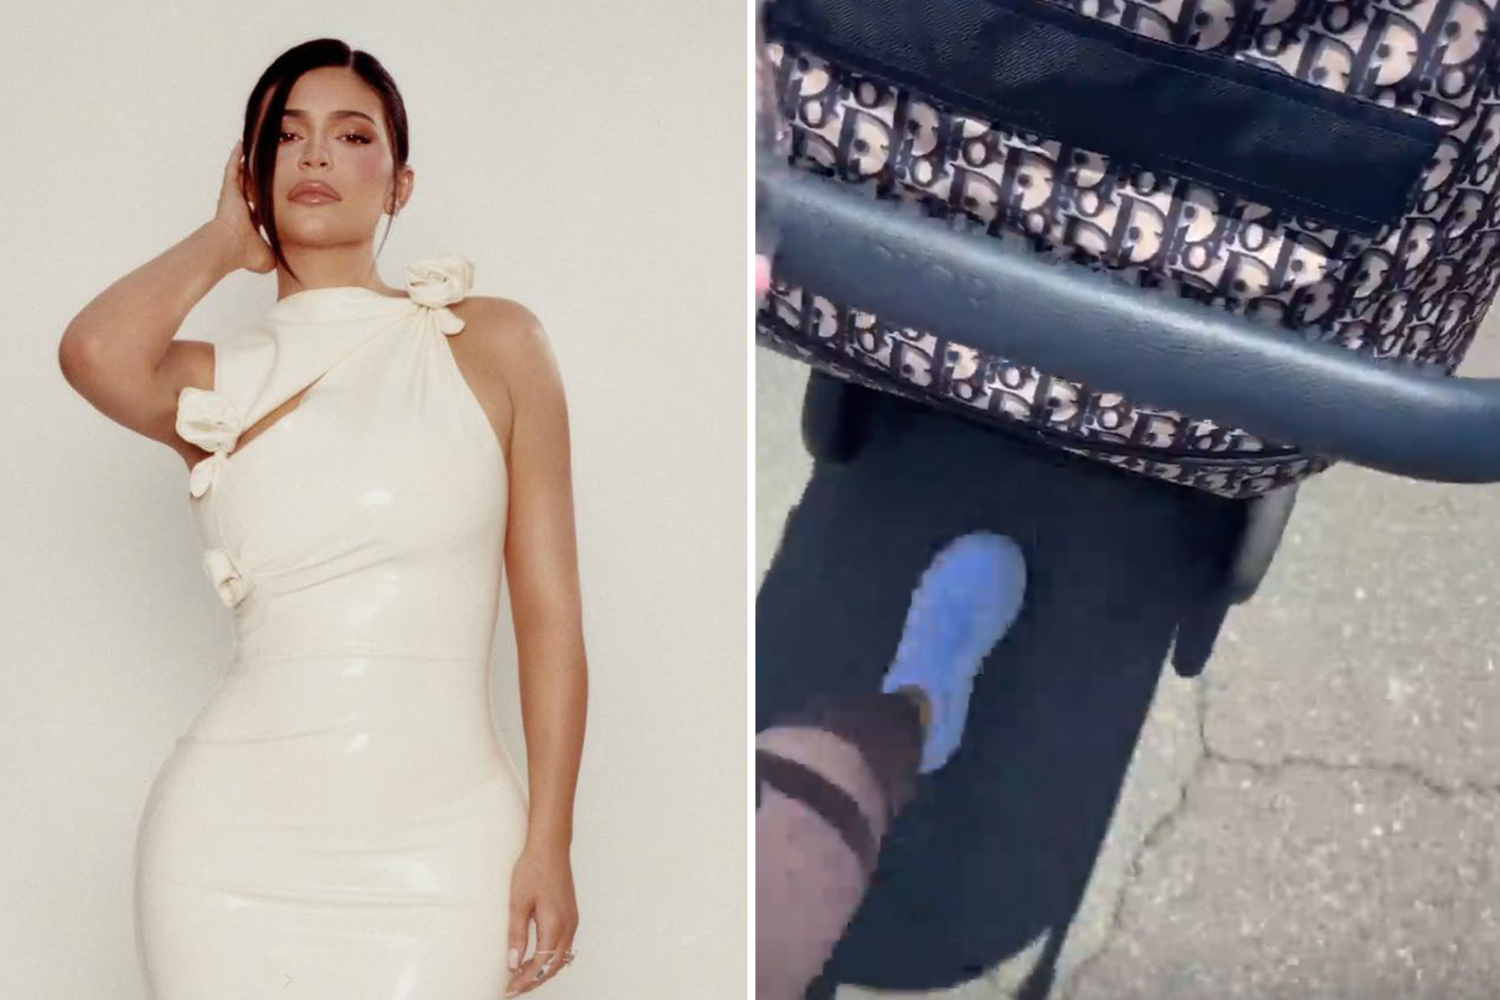 Kylie Jenner owns to same $5k Dior stroller